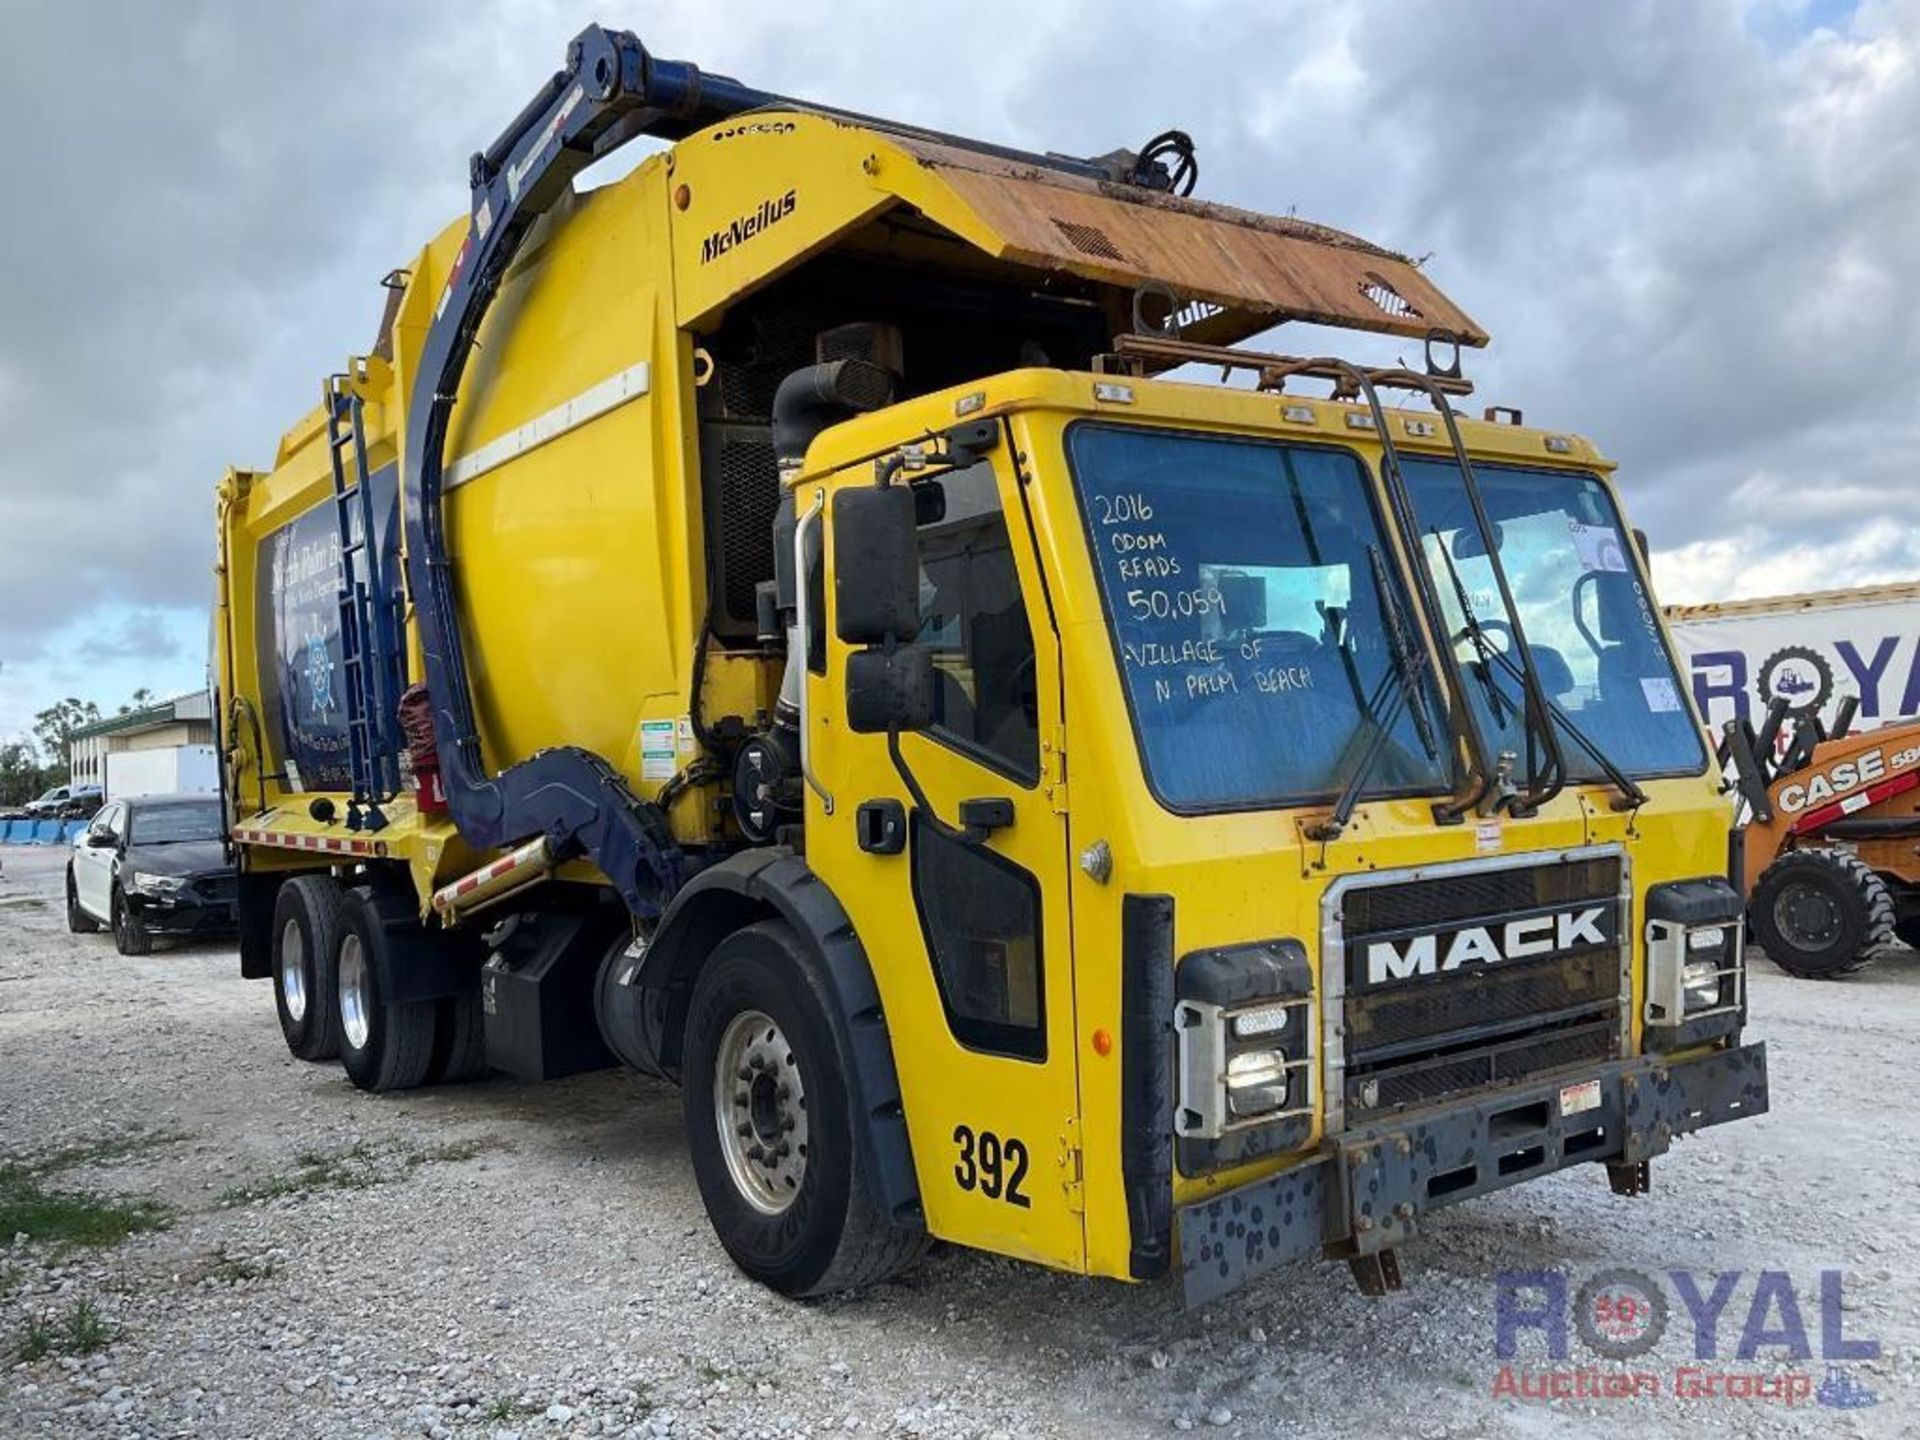 2017 Mack Front Loader Garbage Truck - Image 2 of 61